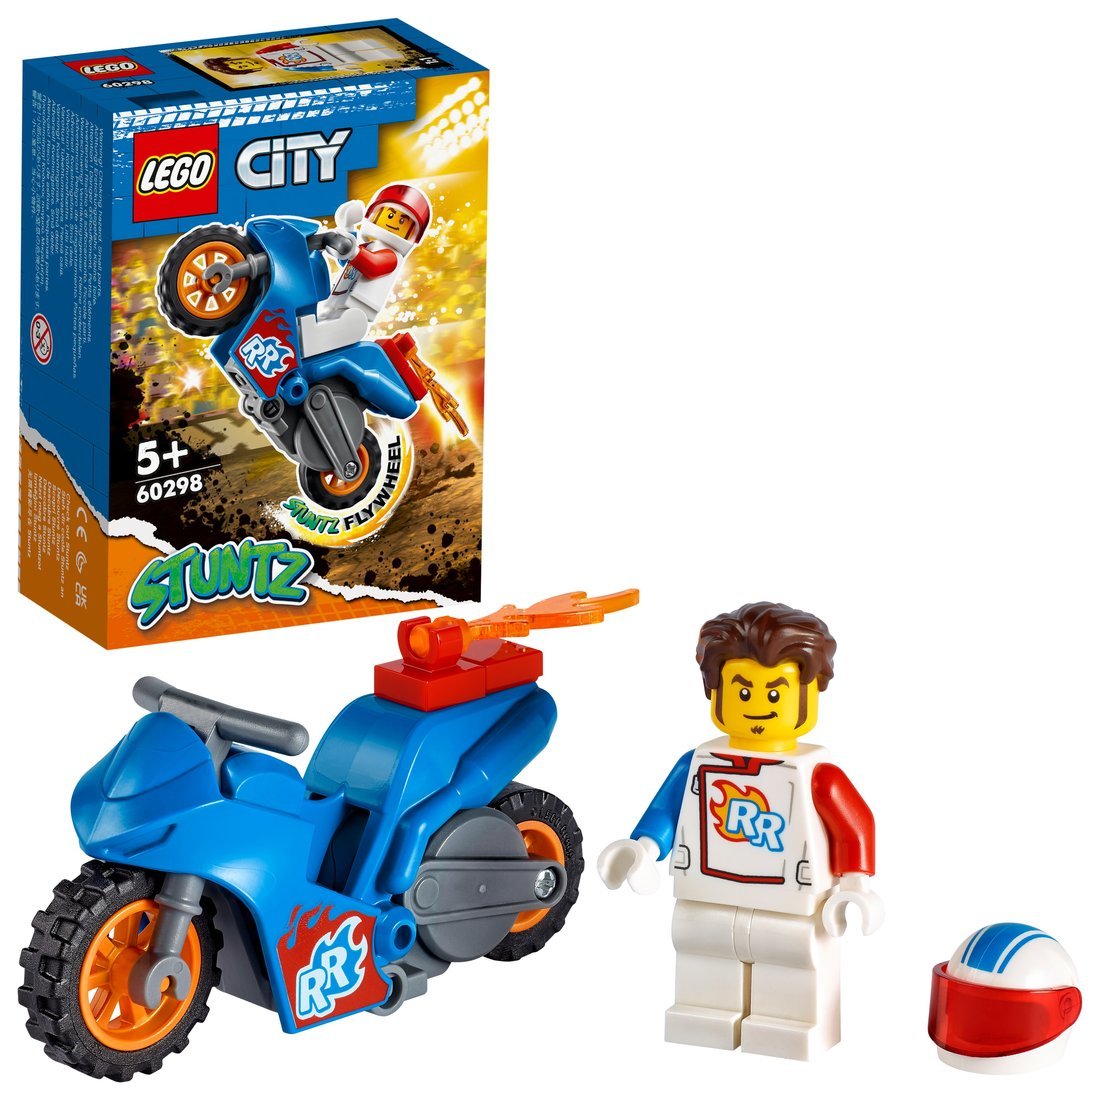 Констр-р LEGO CITY Реактивный трюковый мотоцикл